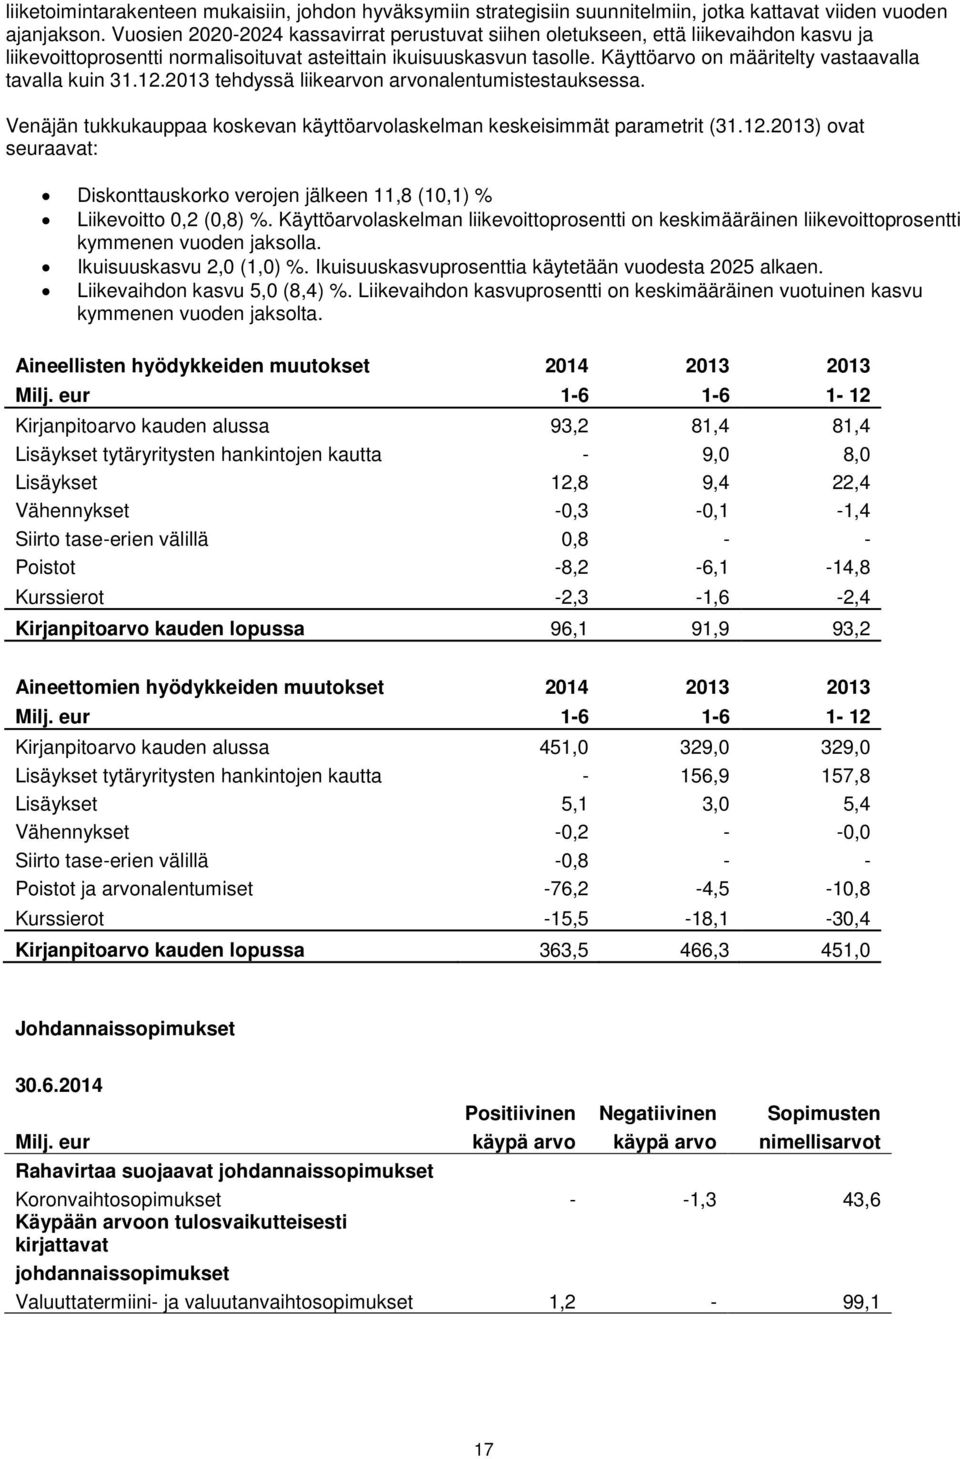 Käyttöarvo on määritelty vastaavalla tavalla kuin 31.12.2013 tehdyssä liikearvon arvonalentumistestauksessa. Venäjän tukkukauppaa koskevan käyttöarvolaskelman keskeisimmät parametrit (31.12.2013) ovat seuraavat: Diskonttauskorko verojen jälkeen 11,8 (10,1) % Liikevoitto 0,2 (0,8) %.